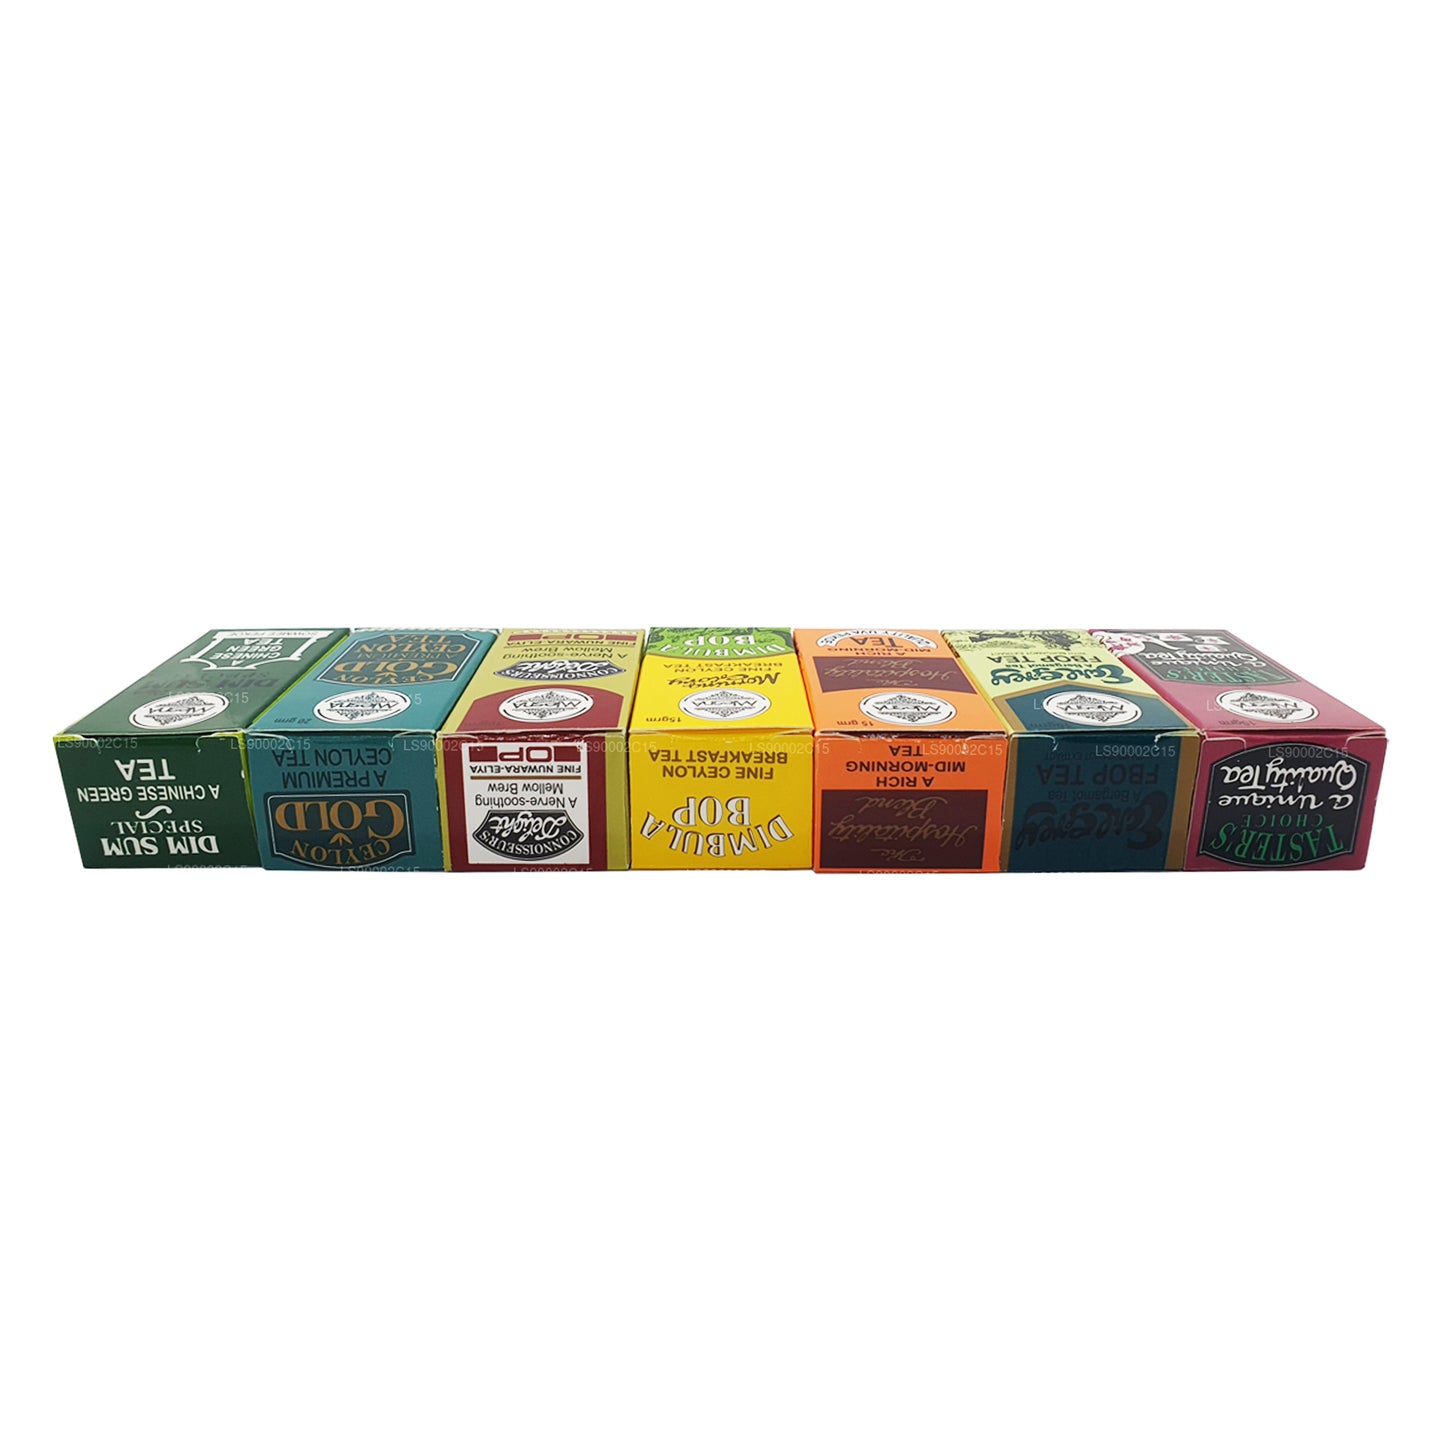 Mlesna 7 各种茶叶纸盒 (100 克)